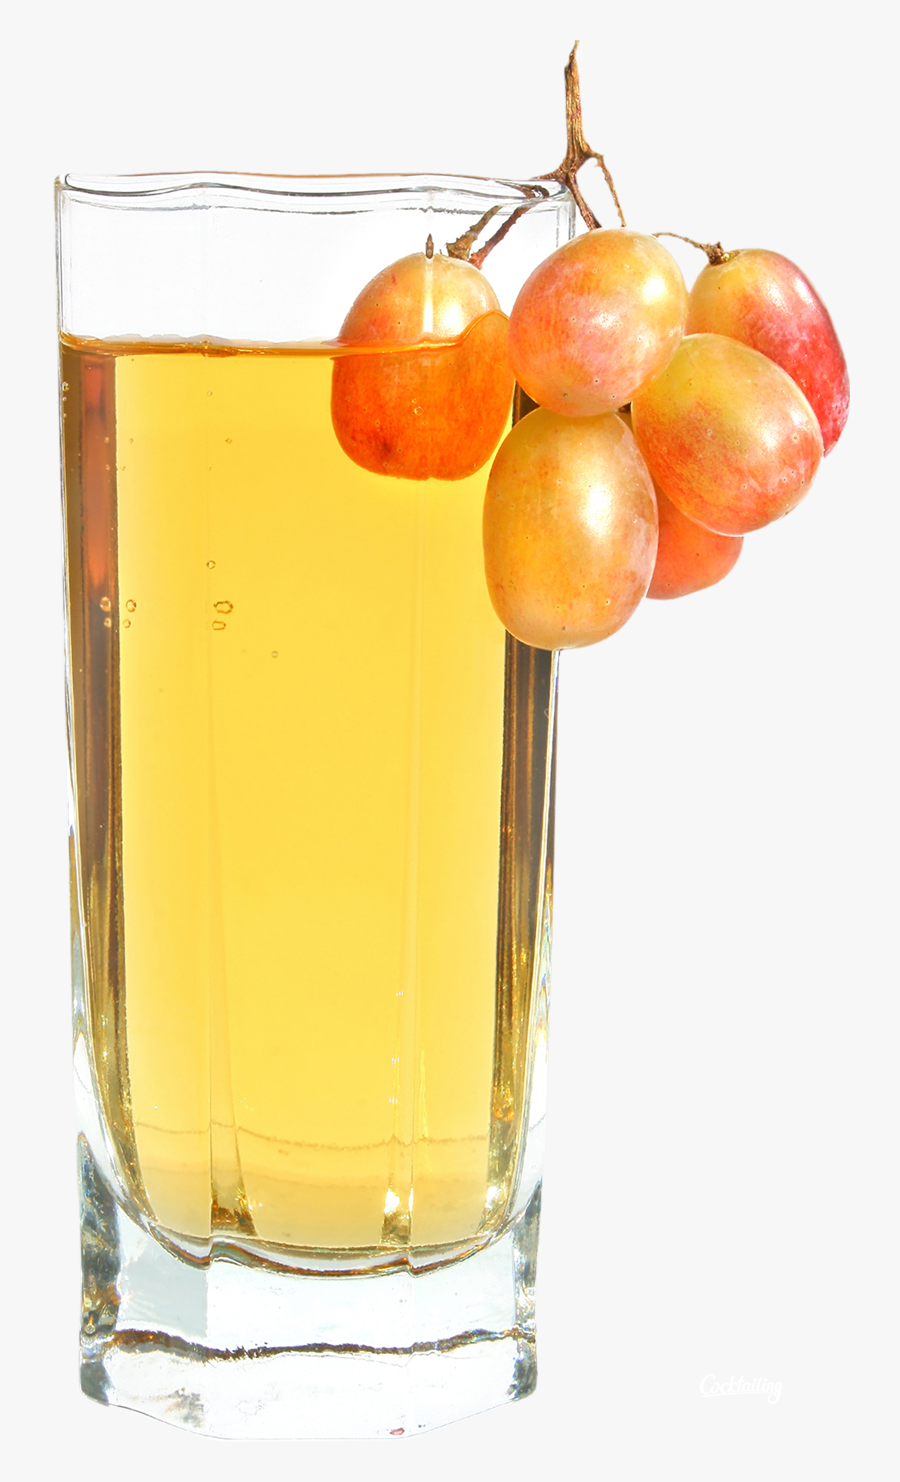 Juice Png Image - Apple Juice Png, Transparent Clipart